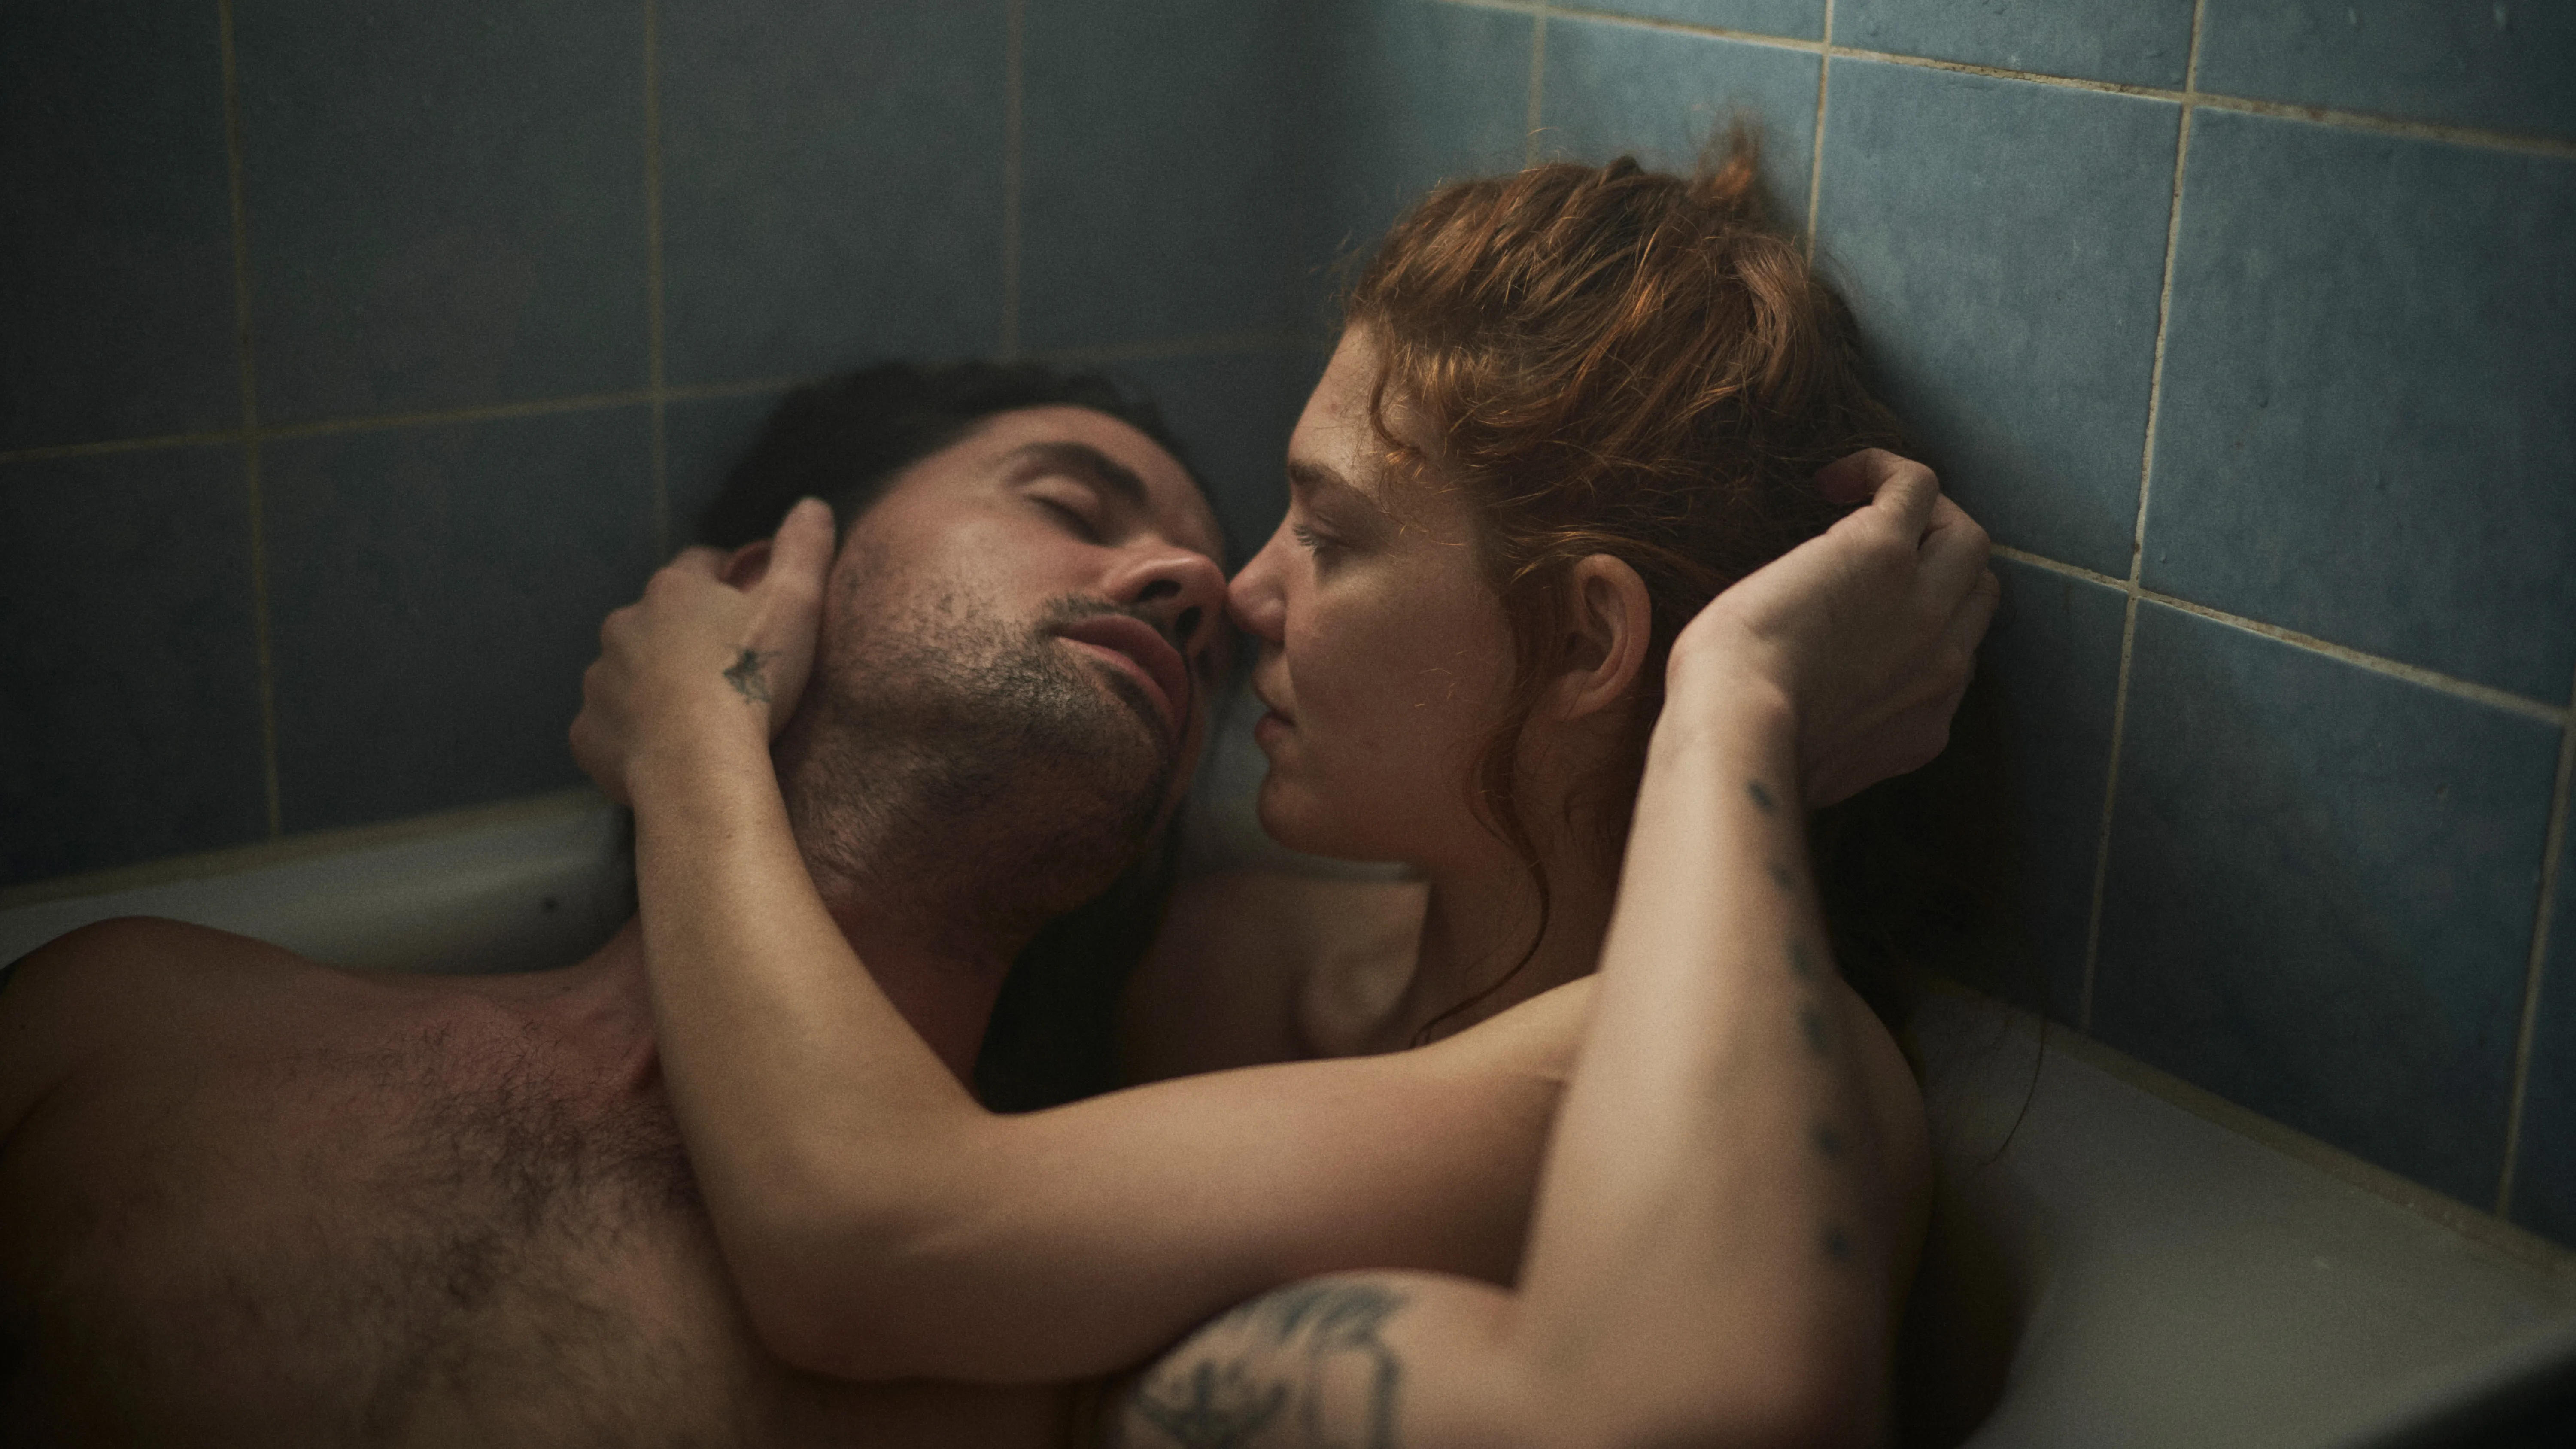 Bild aus dem Film: Paar küssend umschlungen in der Badewanne